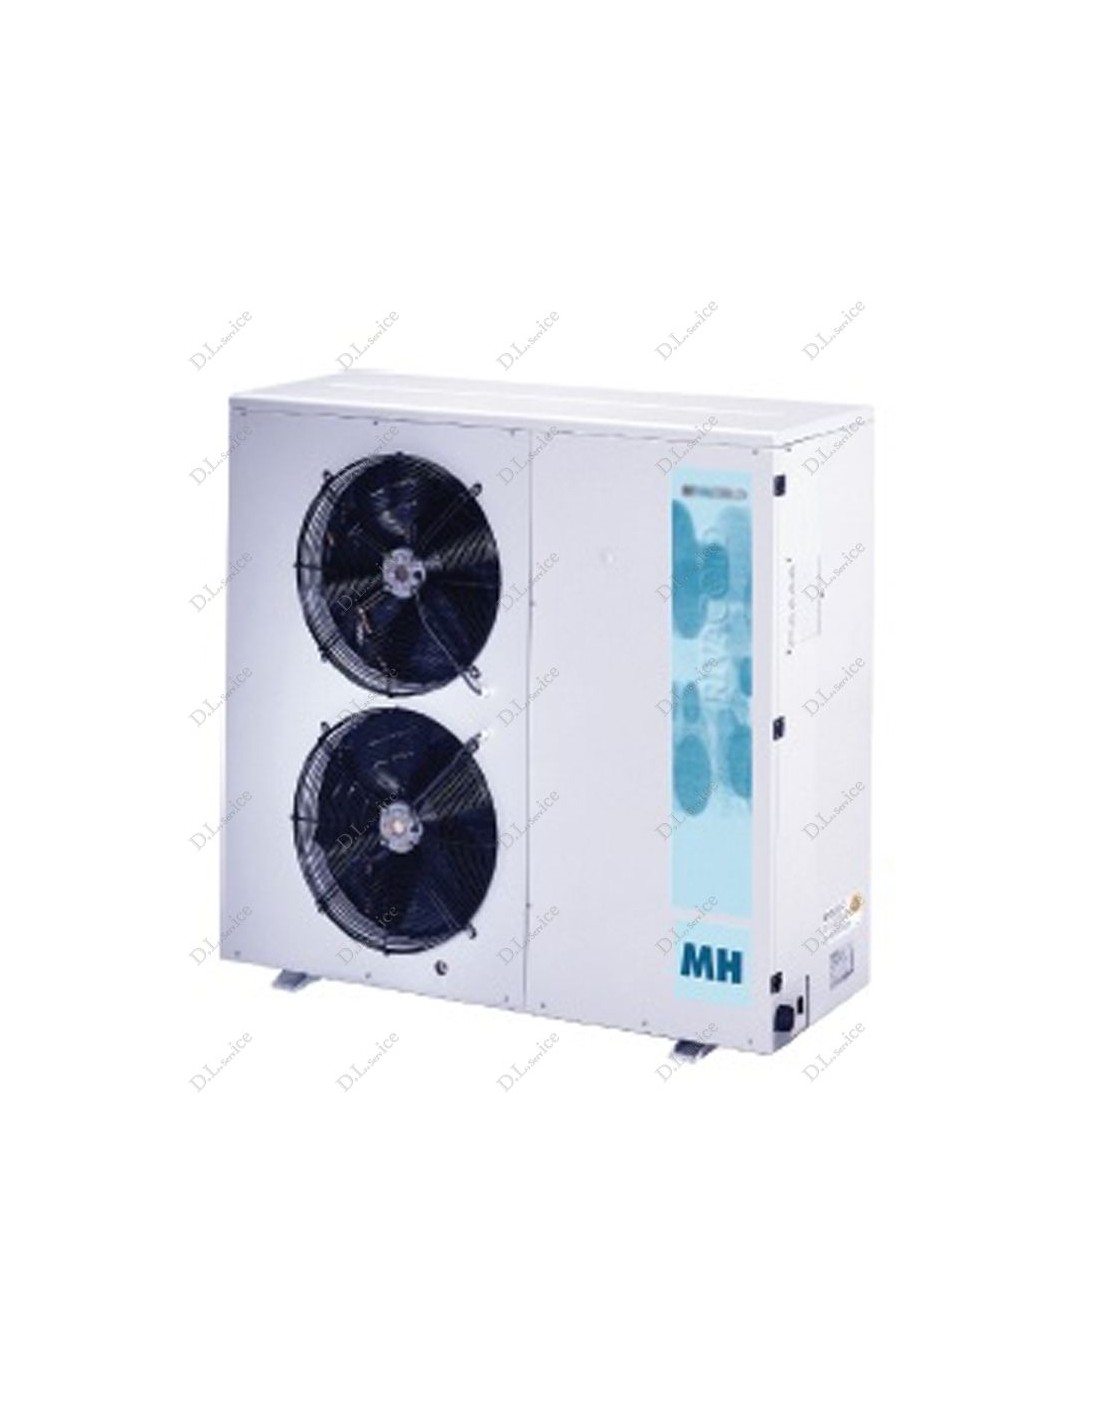 Unidad de condensador remoto para división 4500 - Energía W 10950 - Peso Kg 462 - Dim. cm 175 x 79.6 x 149.7 h